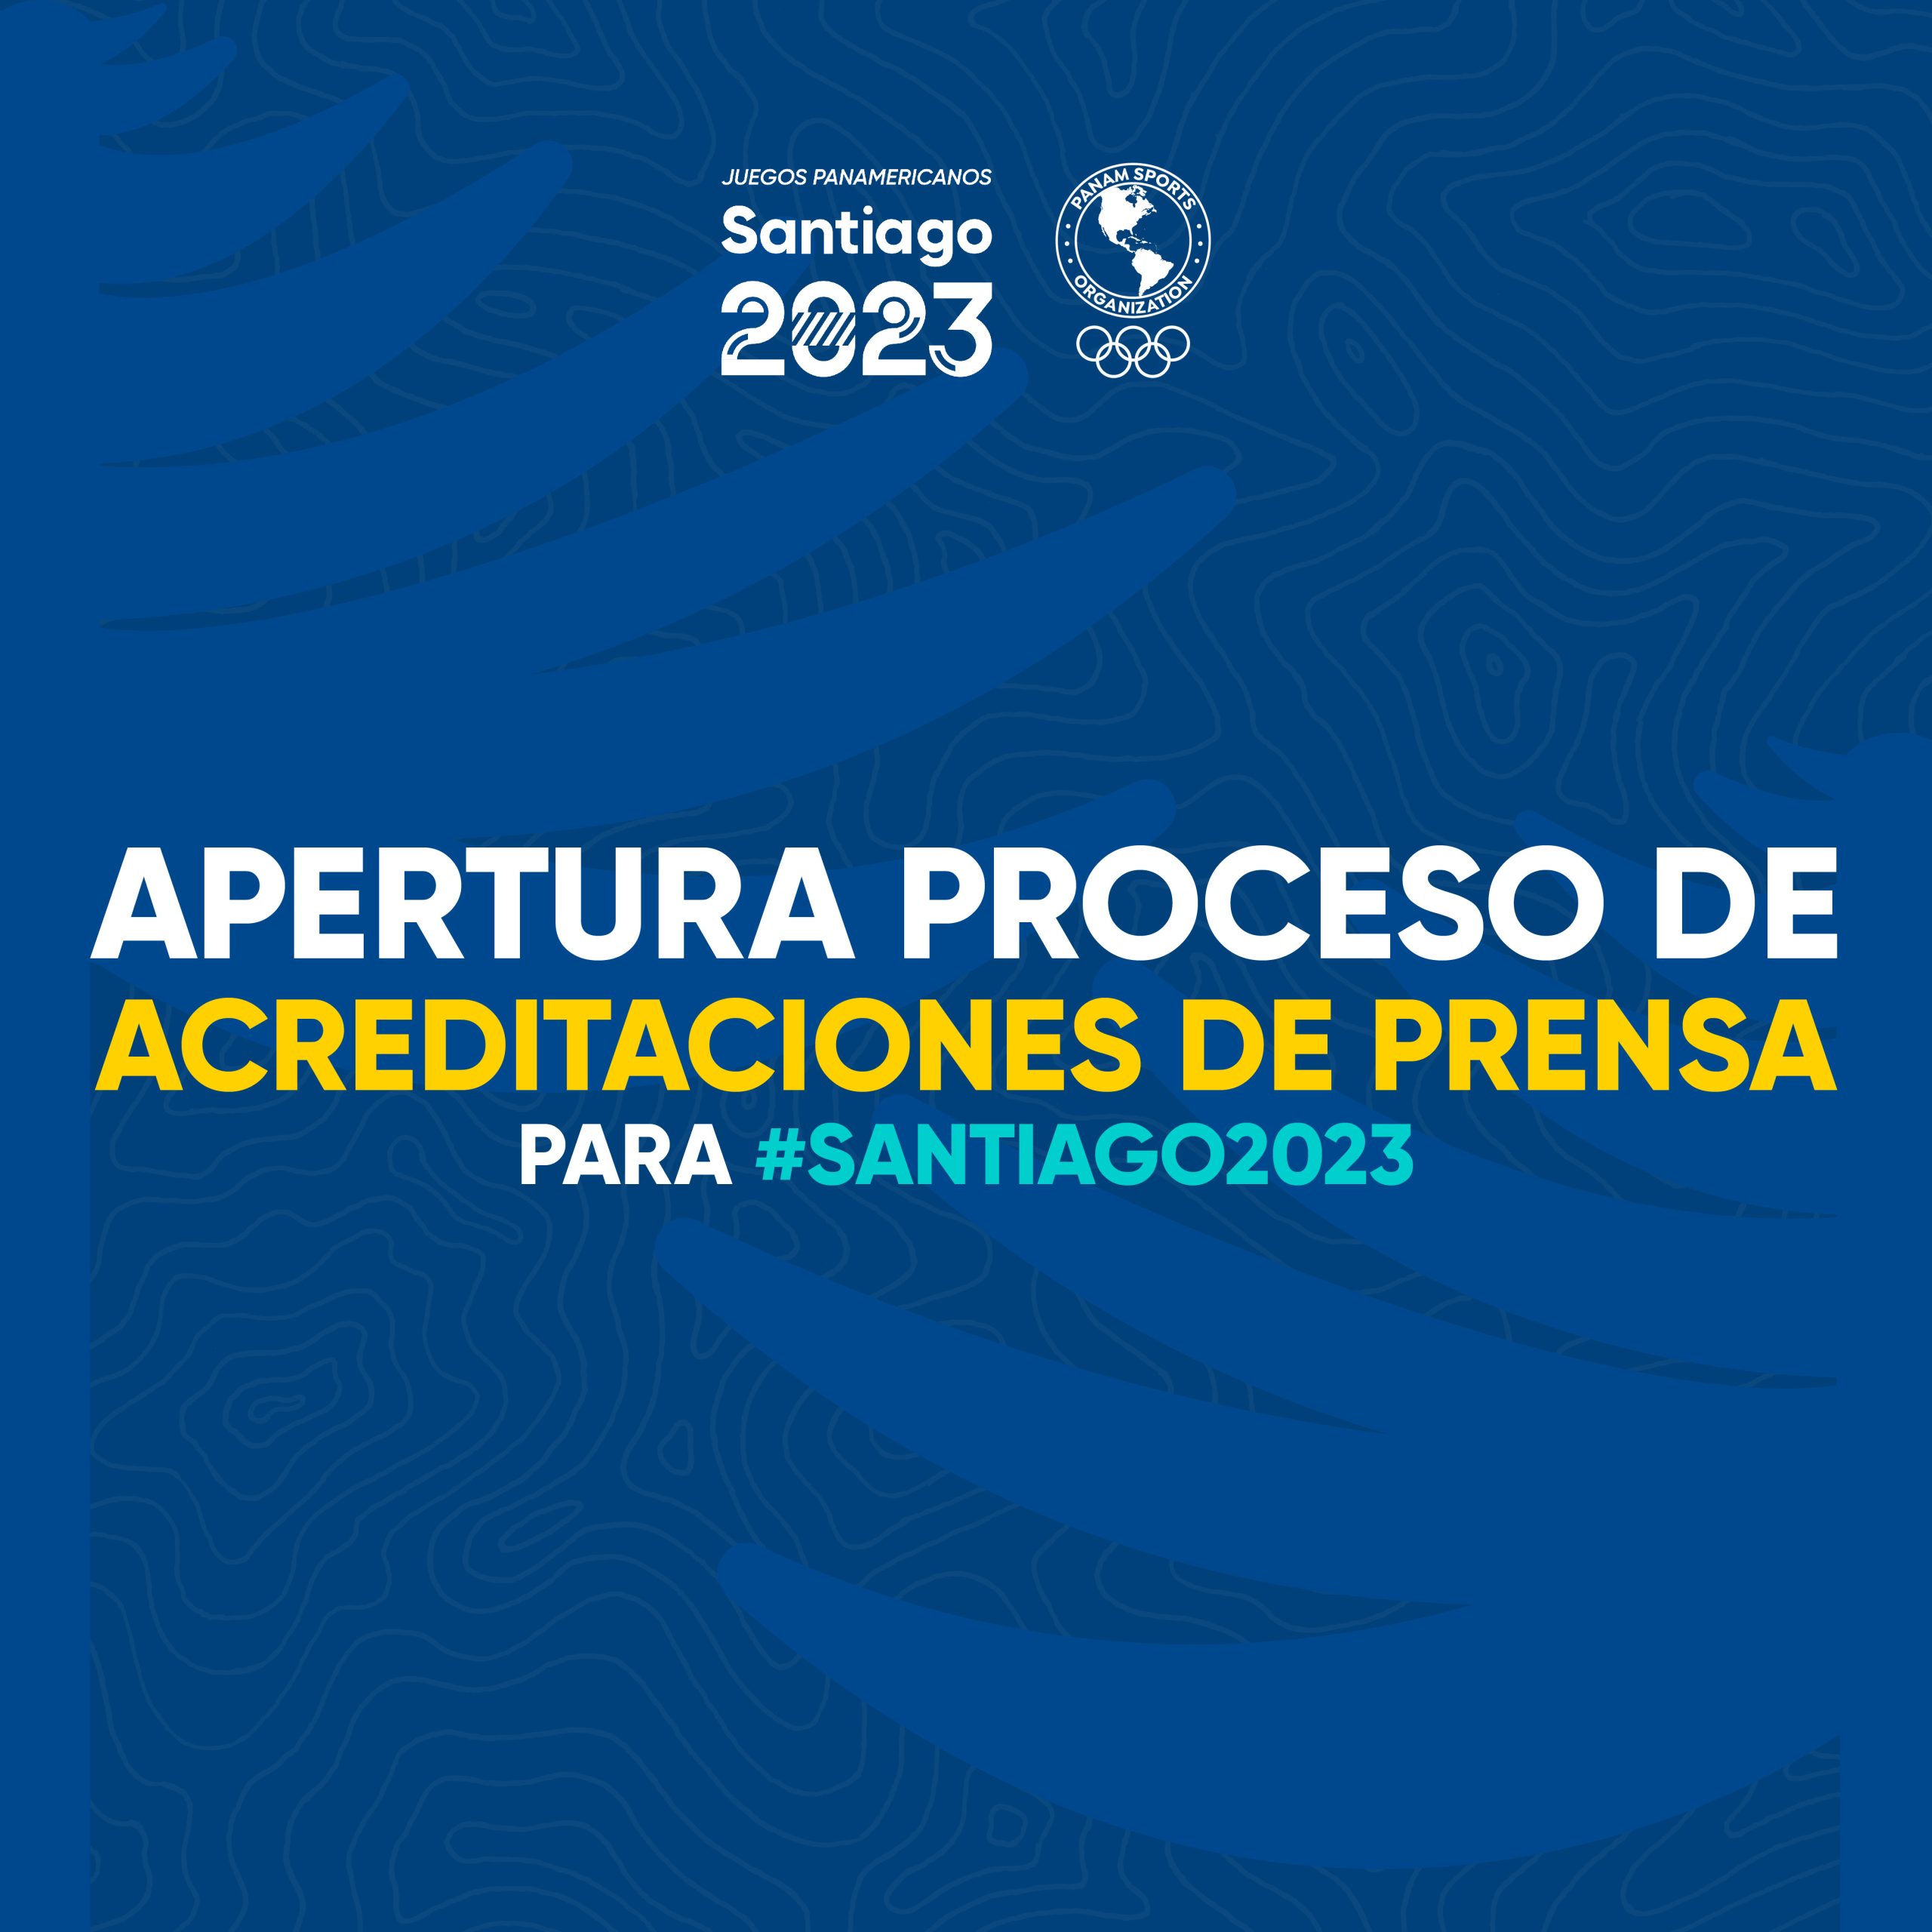 Proceso de acreditaciones de Prensa para Juegos Panamericanos Santiago 2023